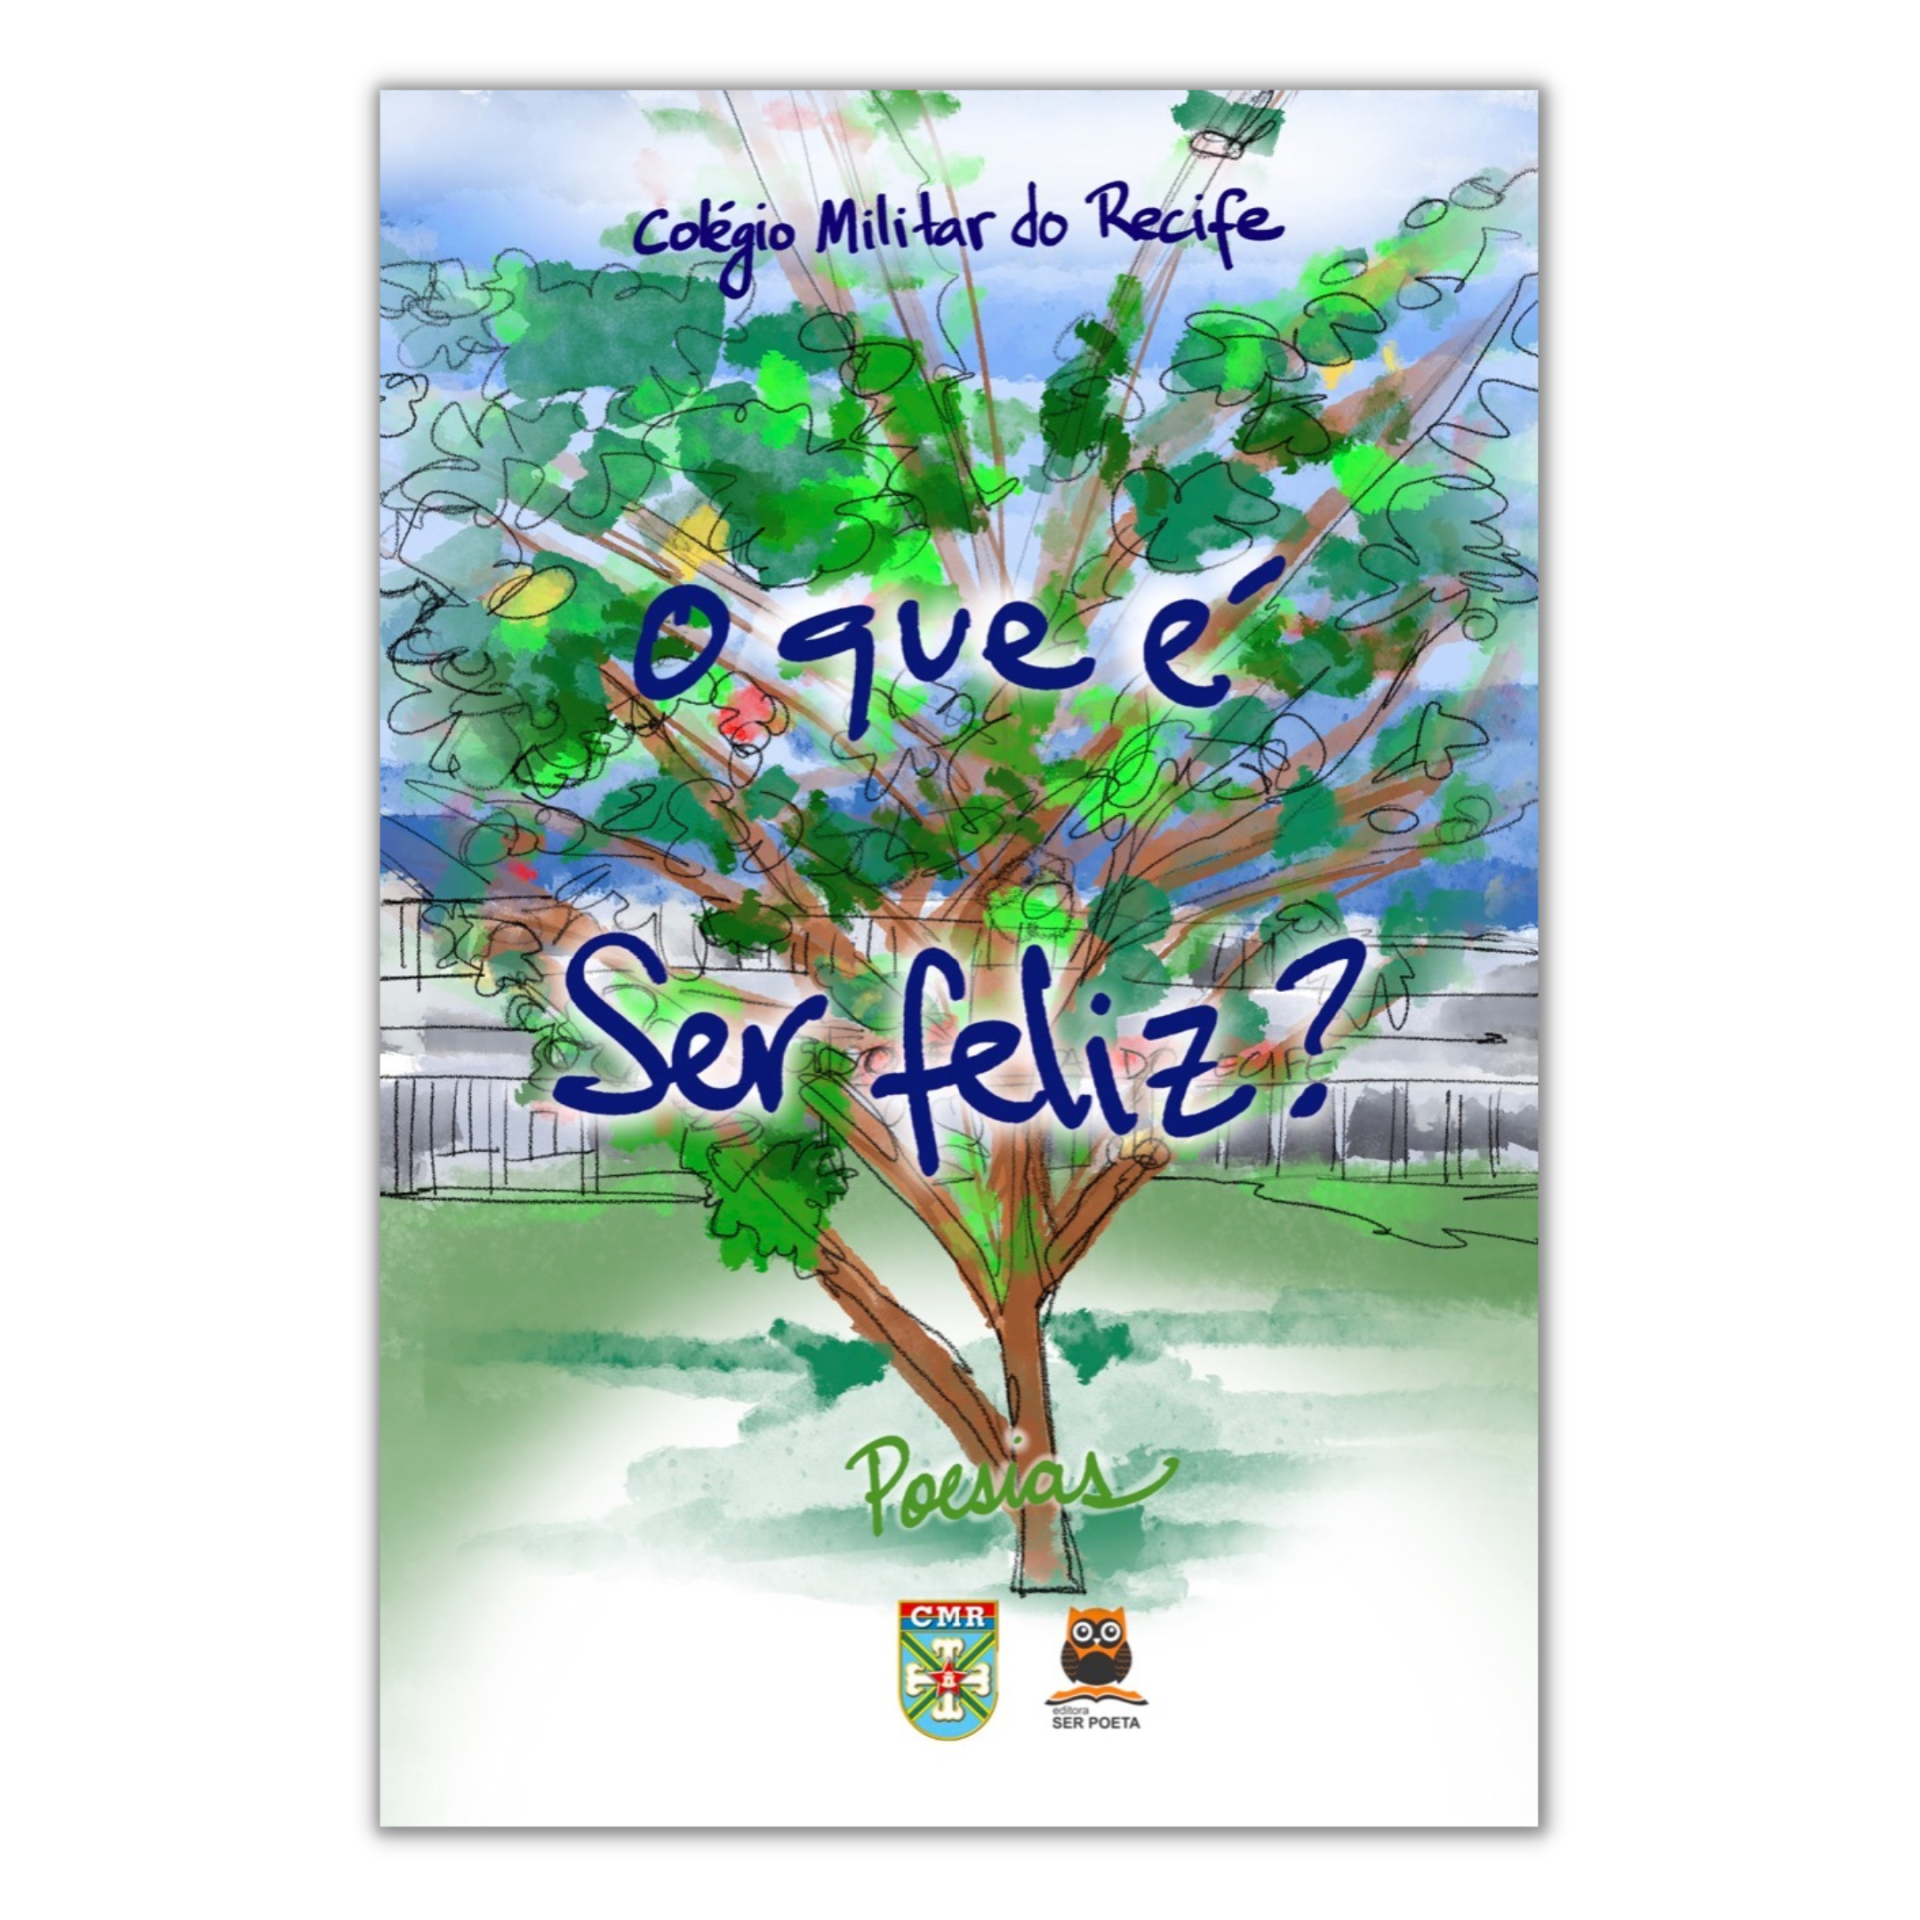 Conjunto de poemas de alunos do Colégio Militar do Recife vira livro